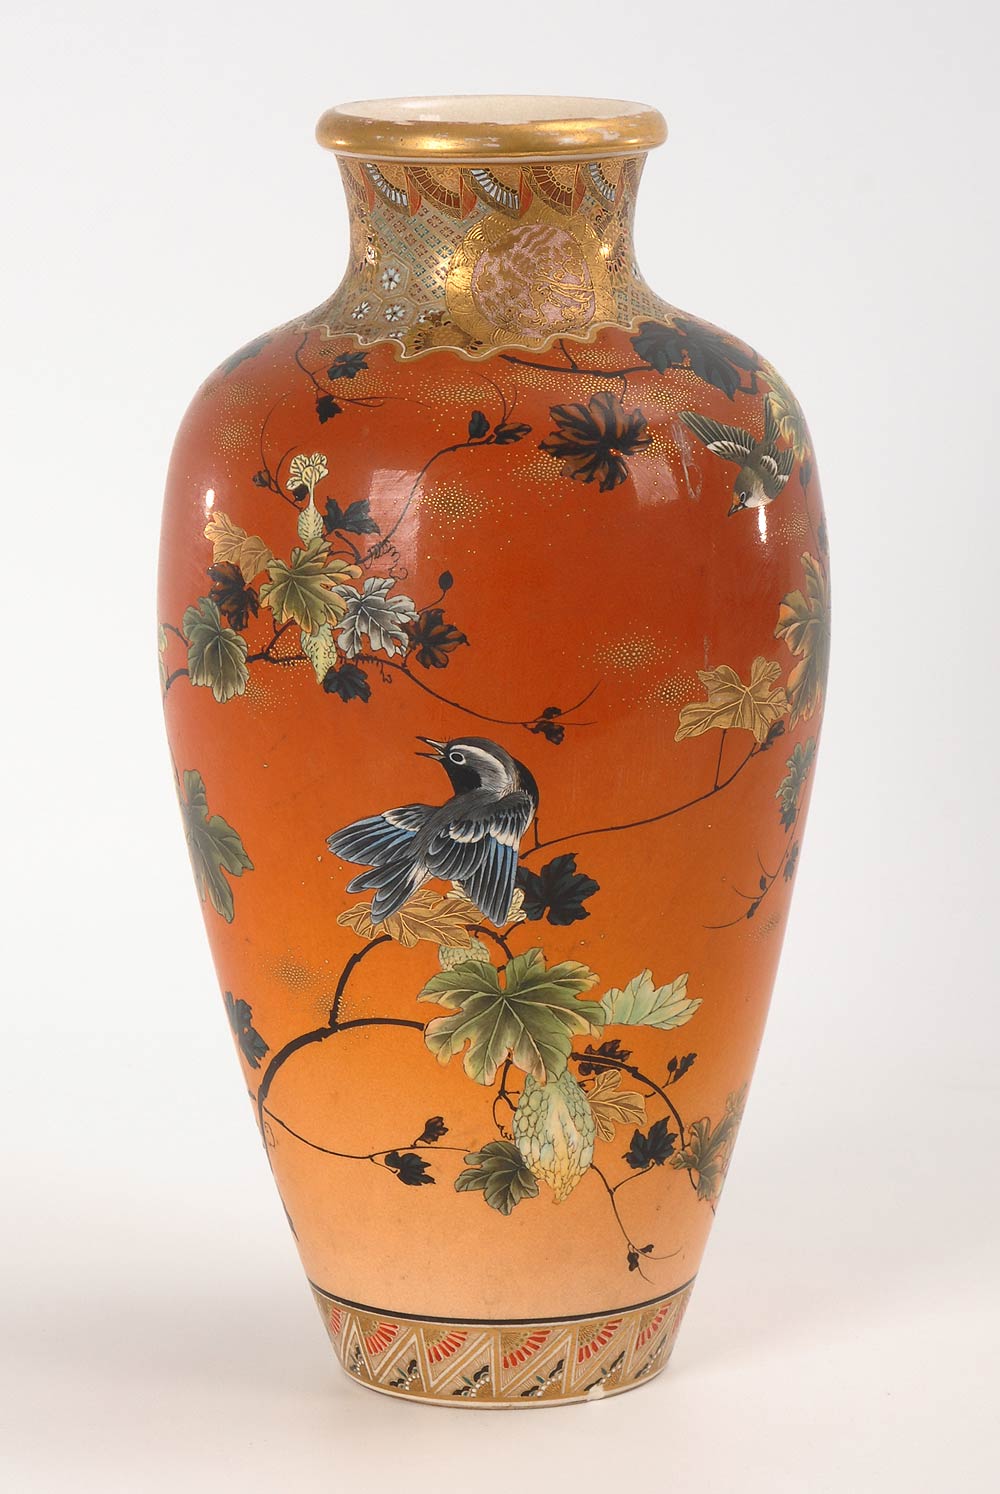 Ungewöhnliche Vase im Satsuma-Stil. Nachtrag 30.5.18: Bestoßung am Korpus. Porzellan, gemarkt. - Image 2 of 3